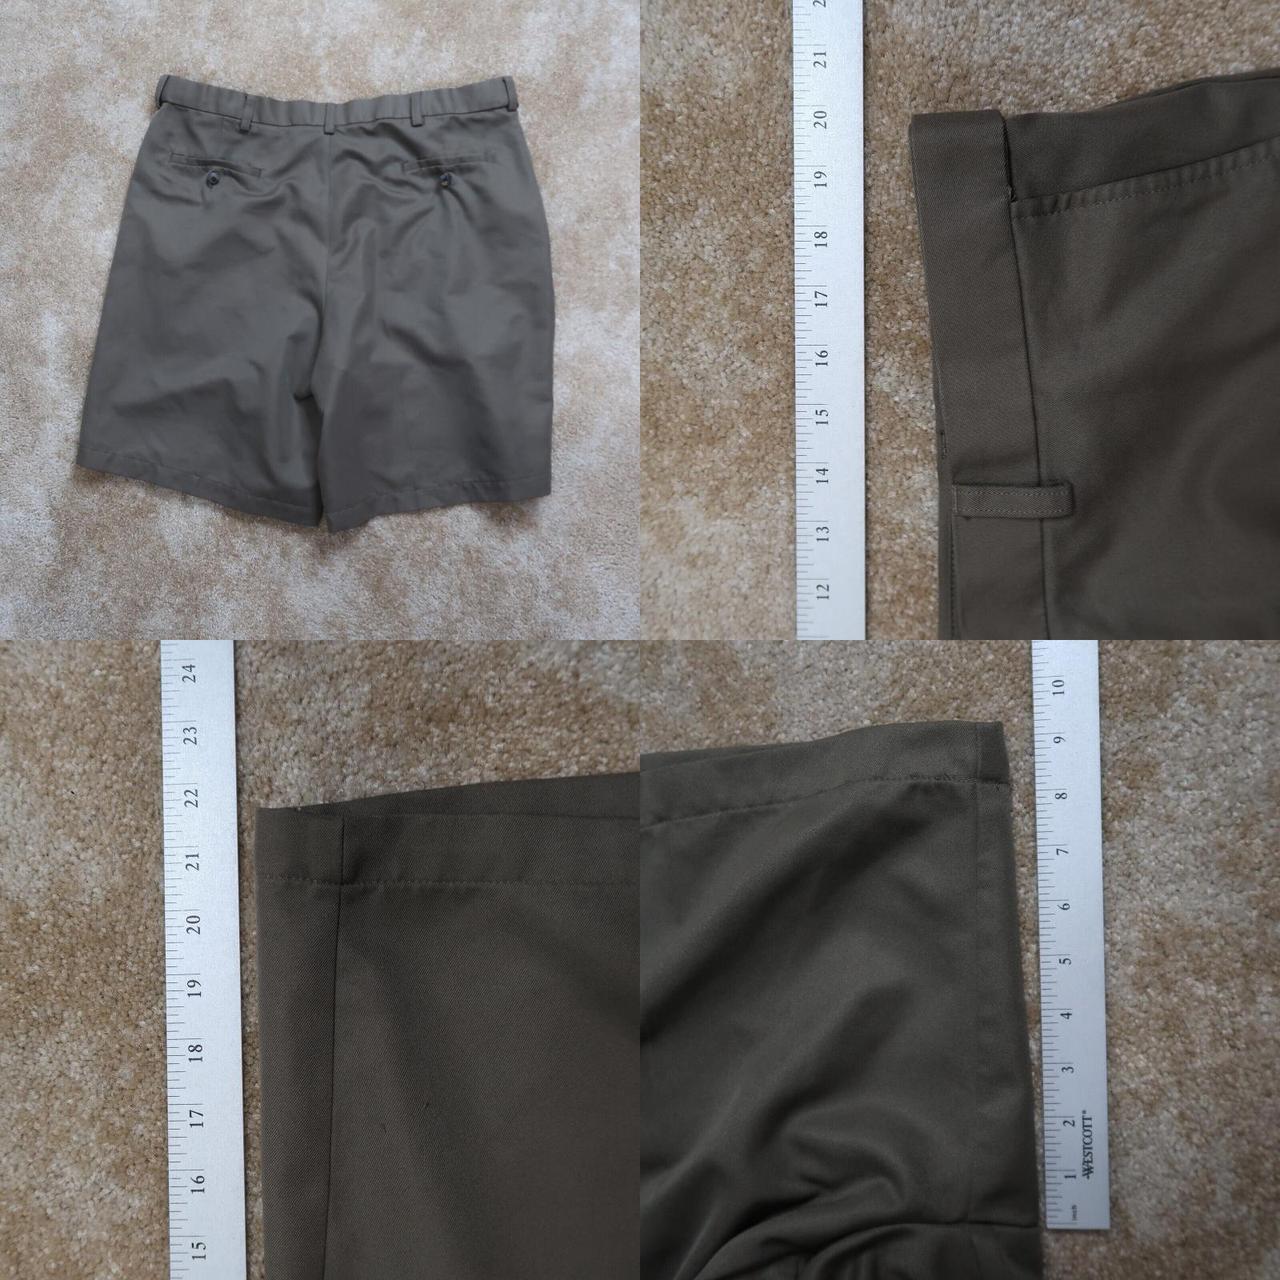 Product Image 4 - Haggar Chino Shorts Men's Size